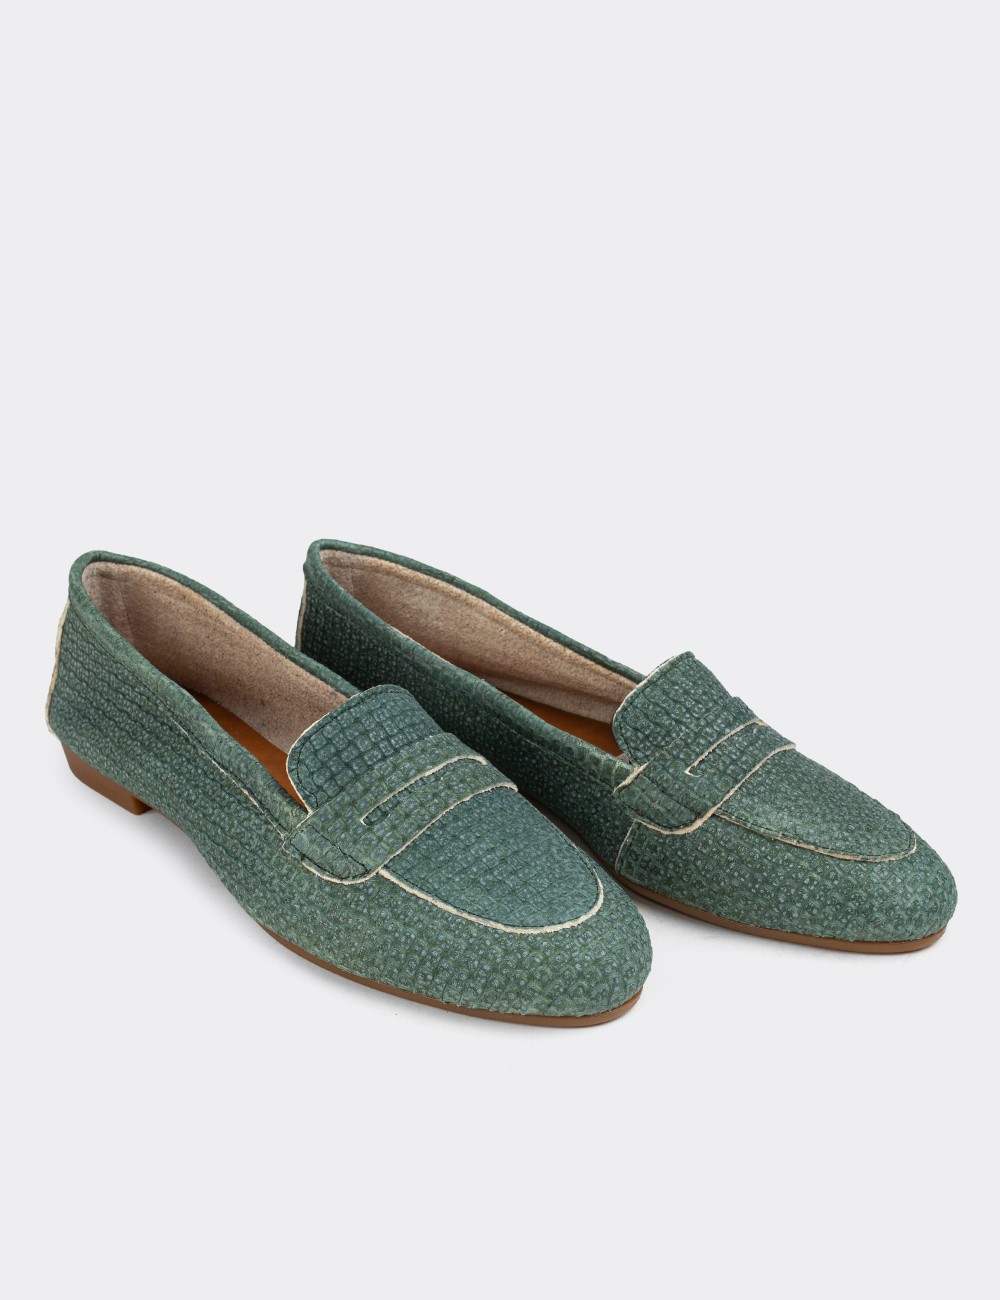 Green Nubuck Leather Loafers - E3202ZYSLC05